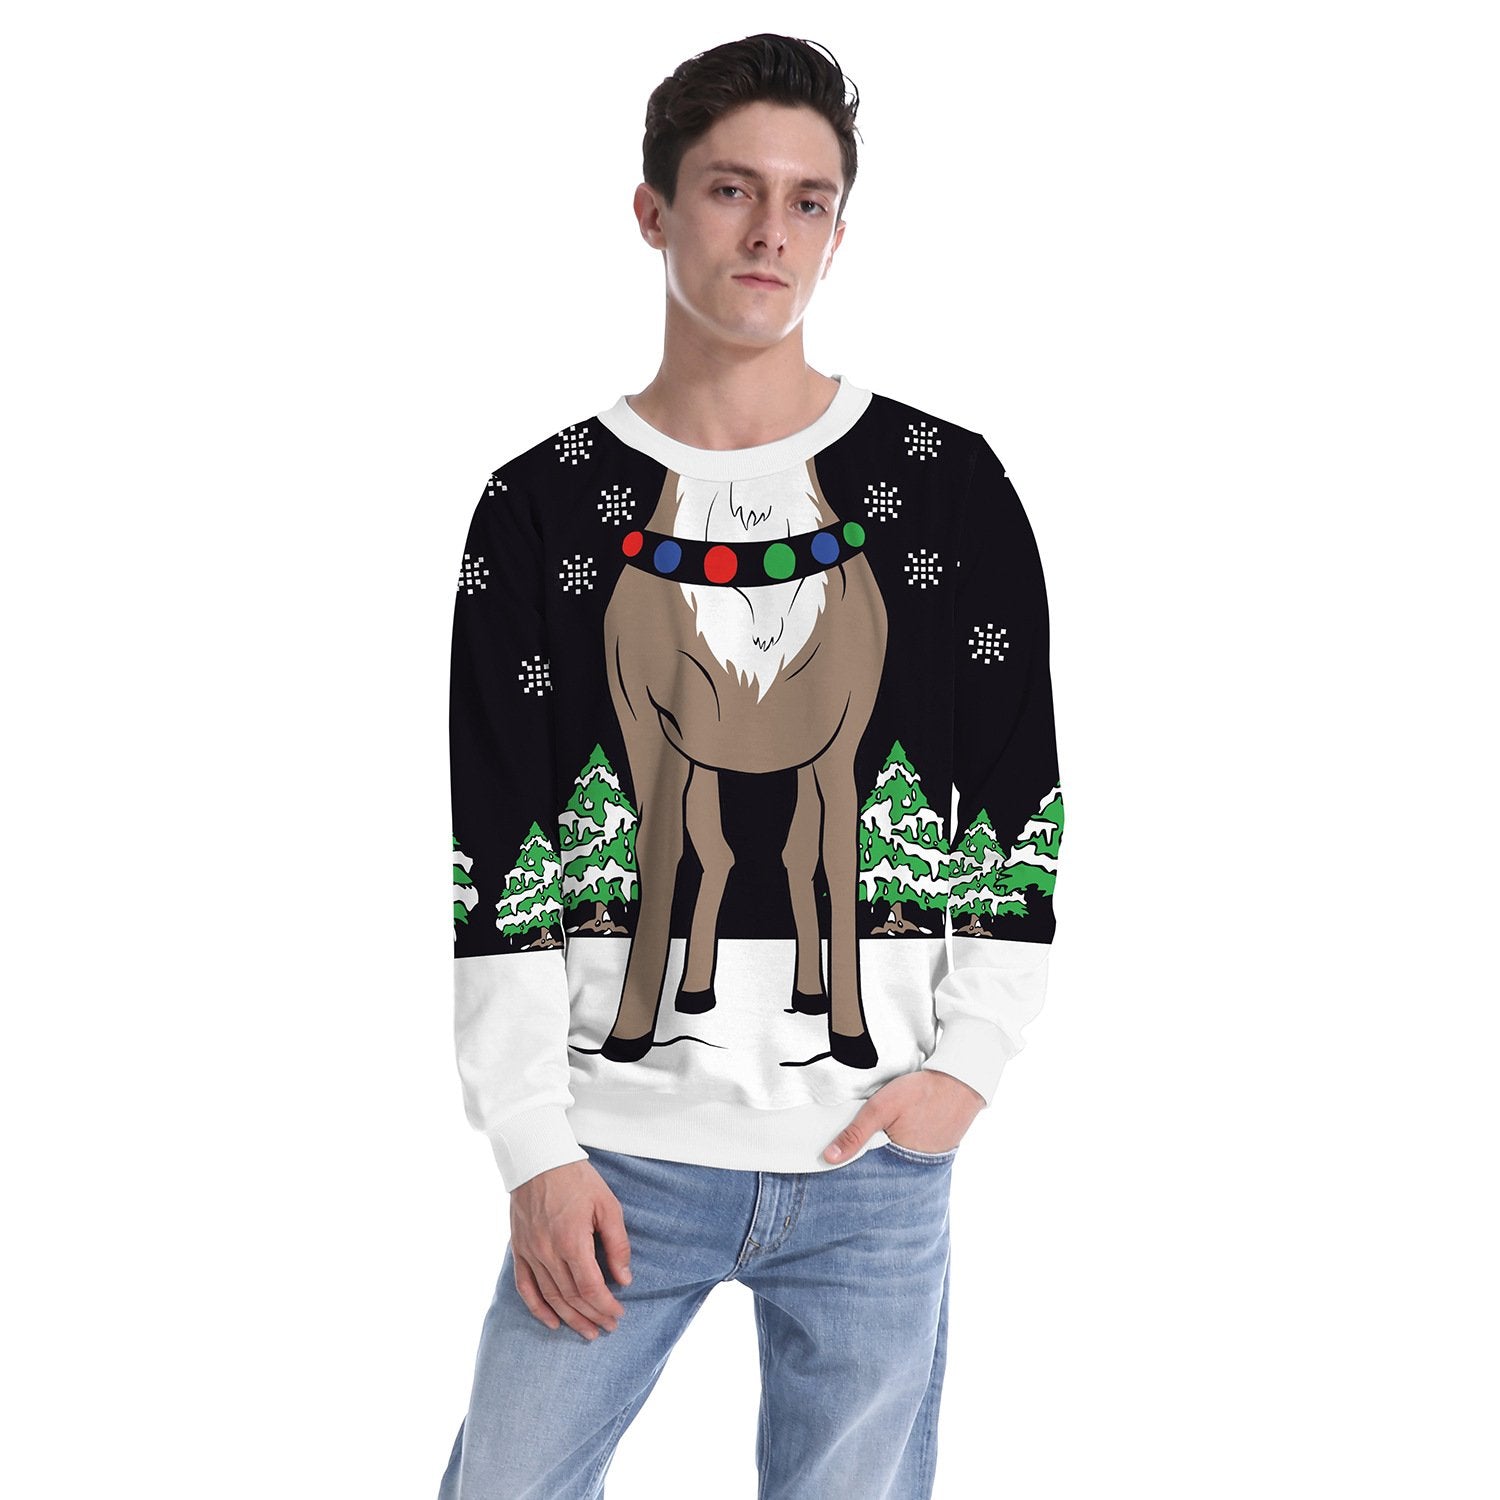 3D Reindeer Print Women Scoop Christmas Party Sweatshirt